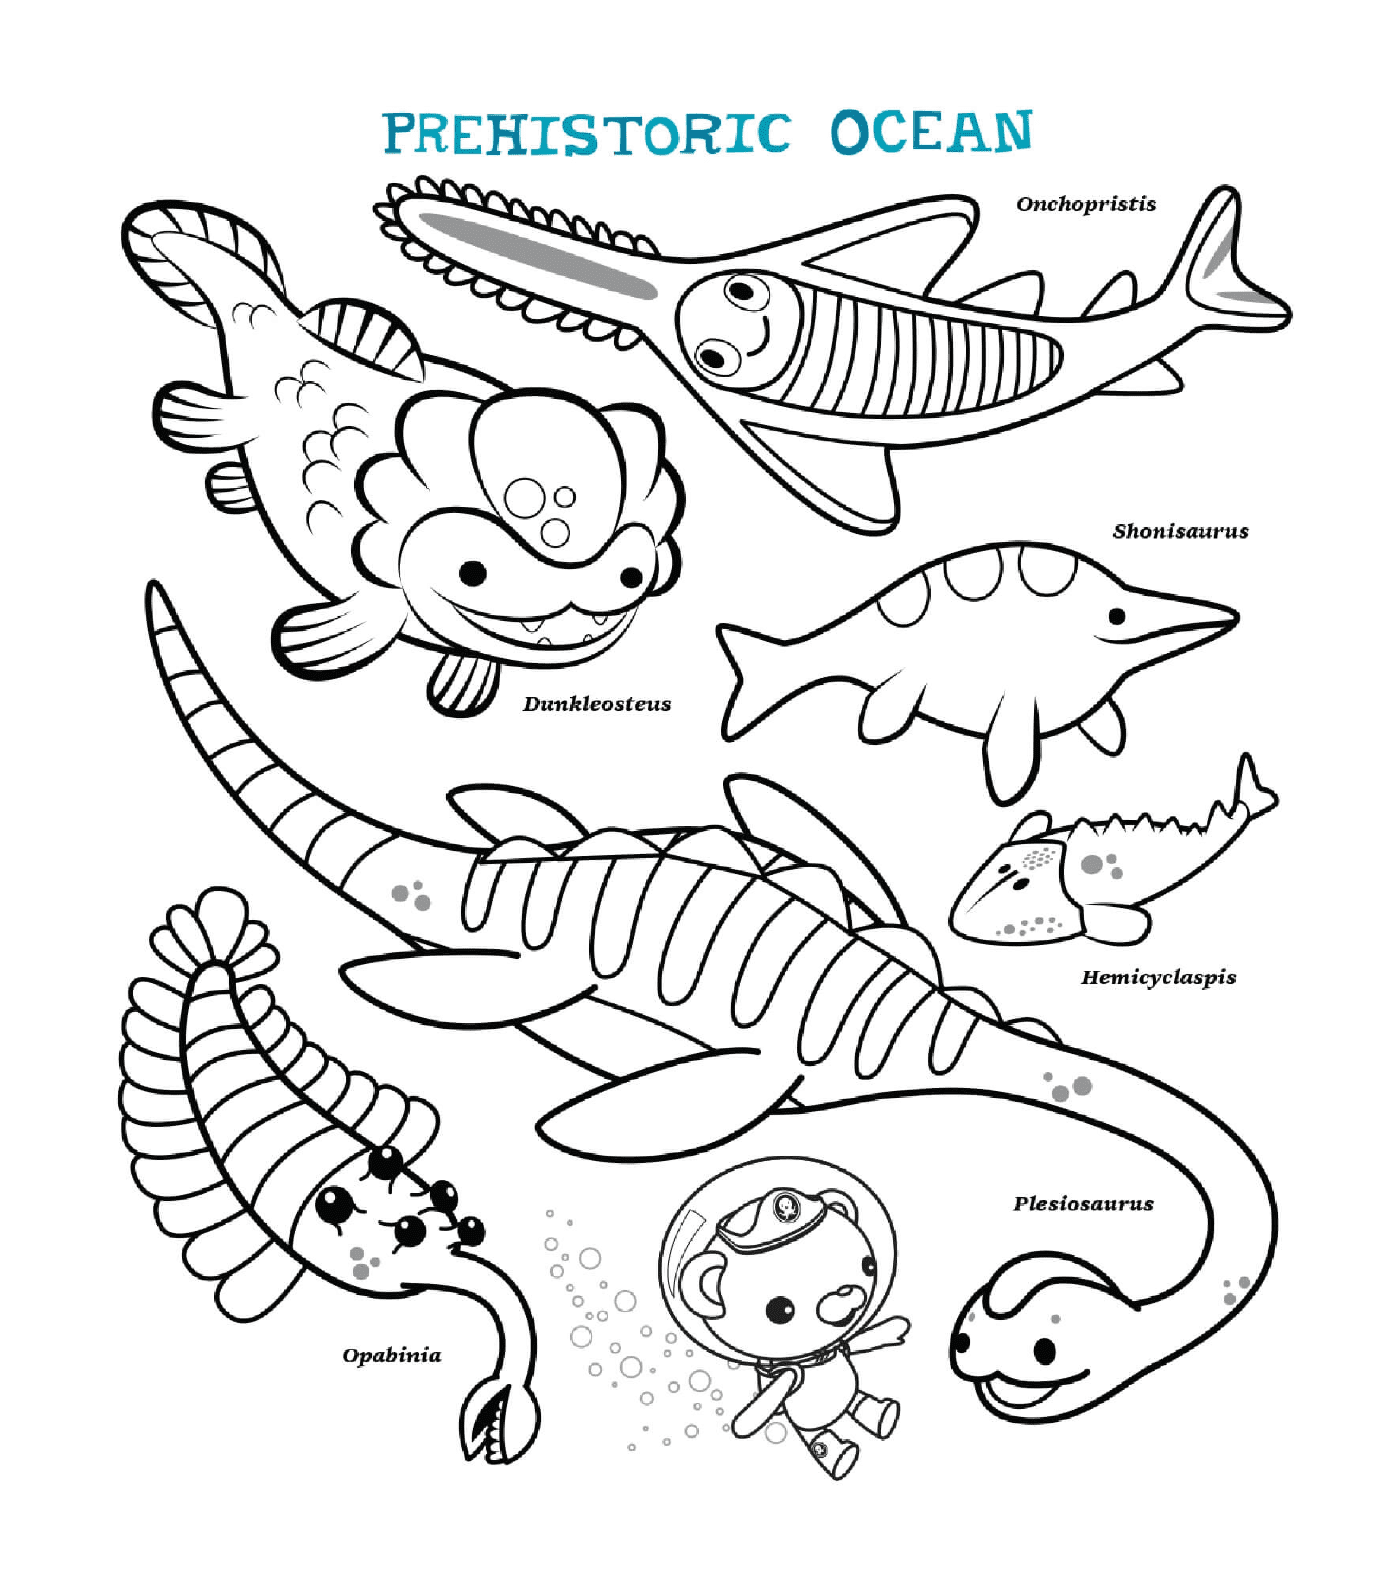   Océan préhistorique, une rencontre avec des créatures marines 